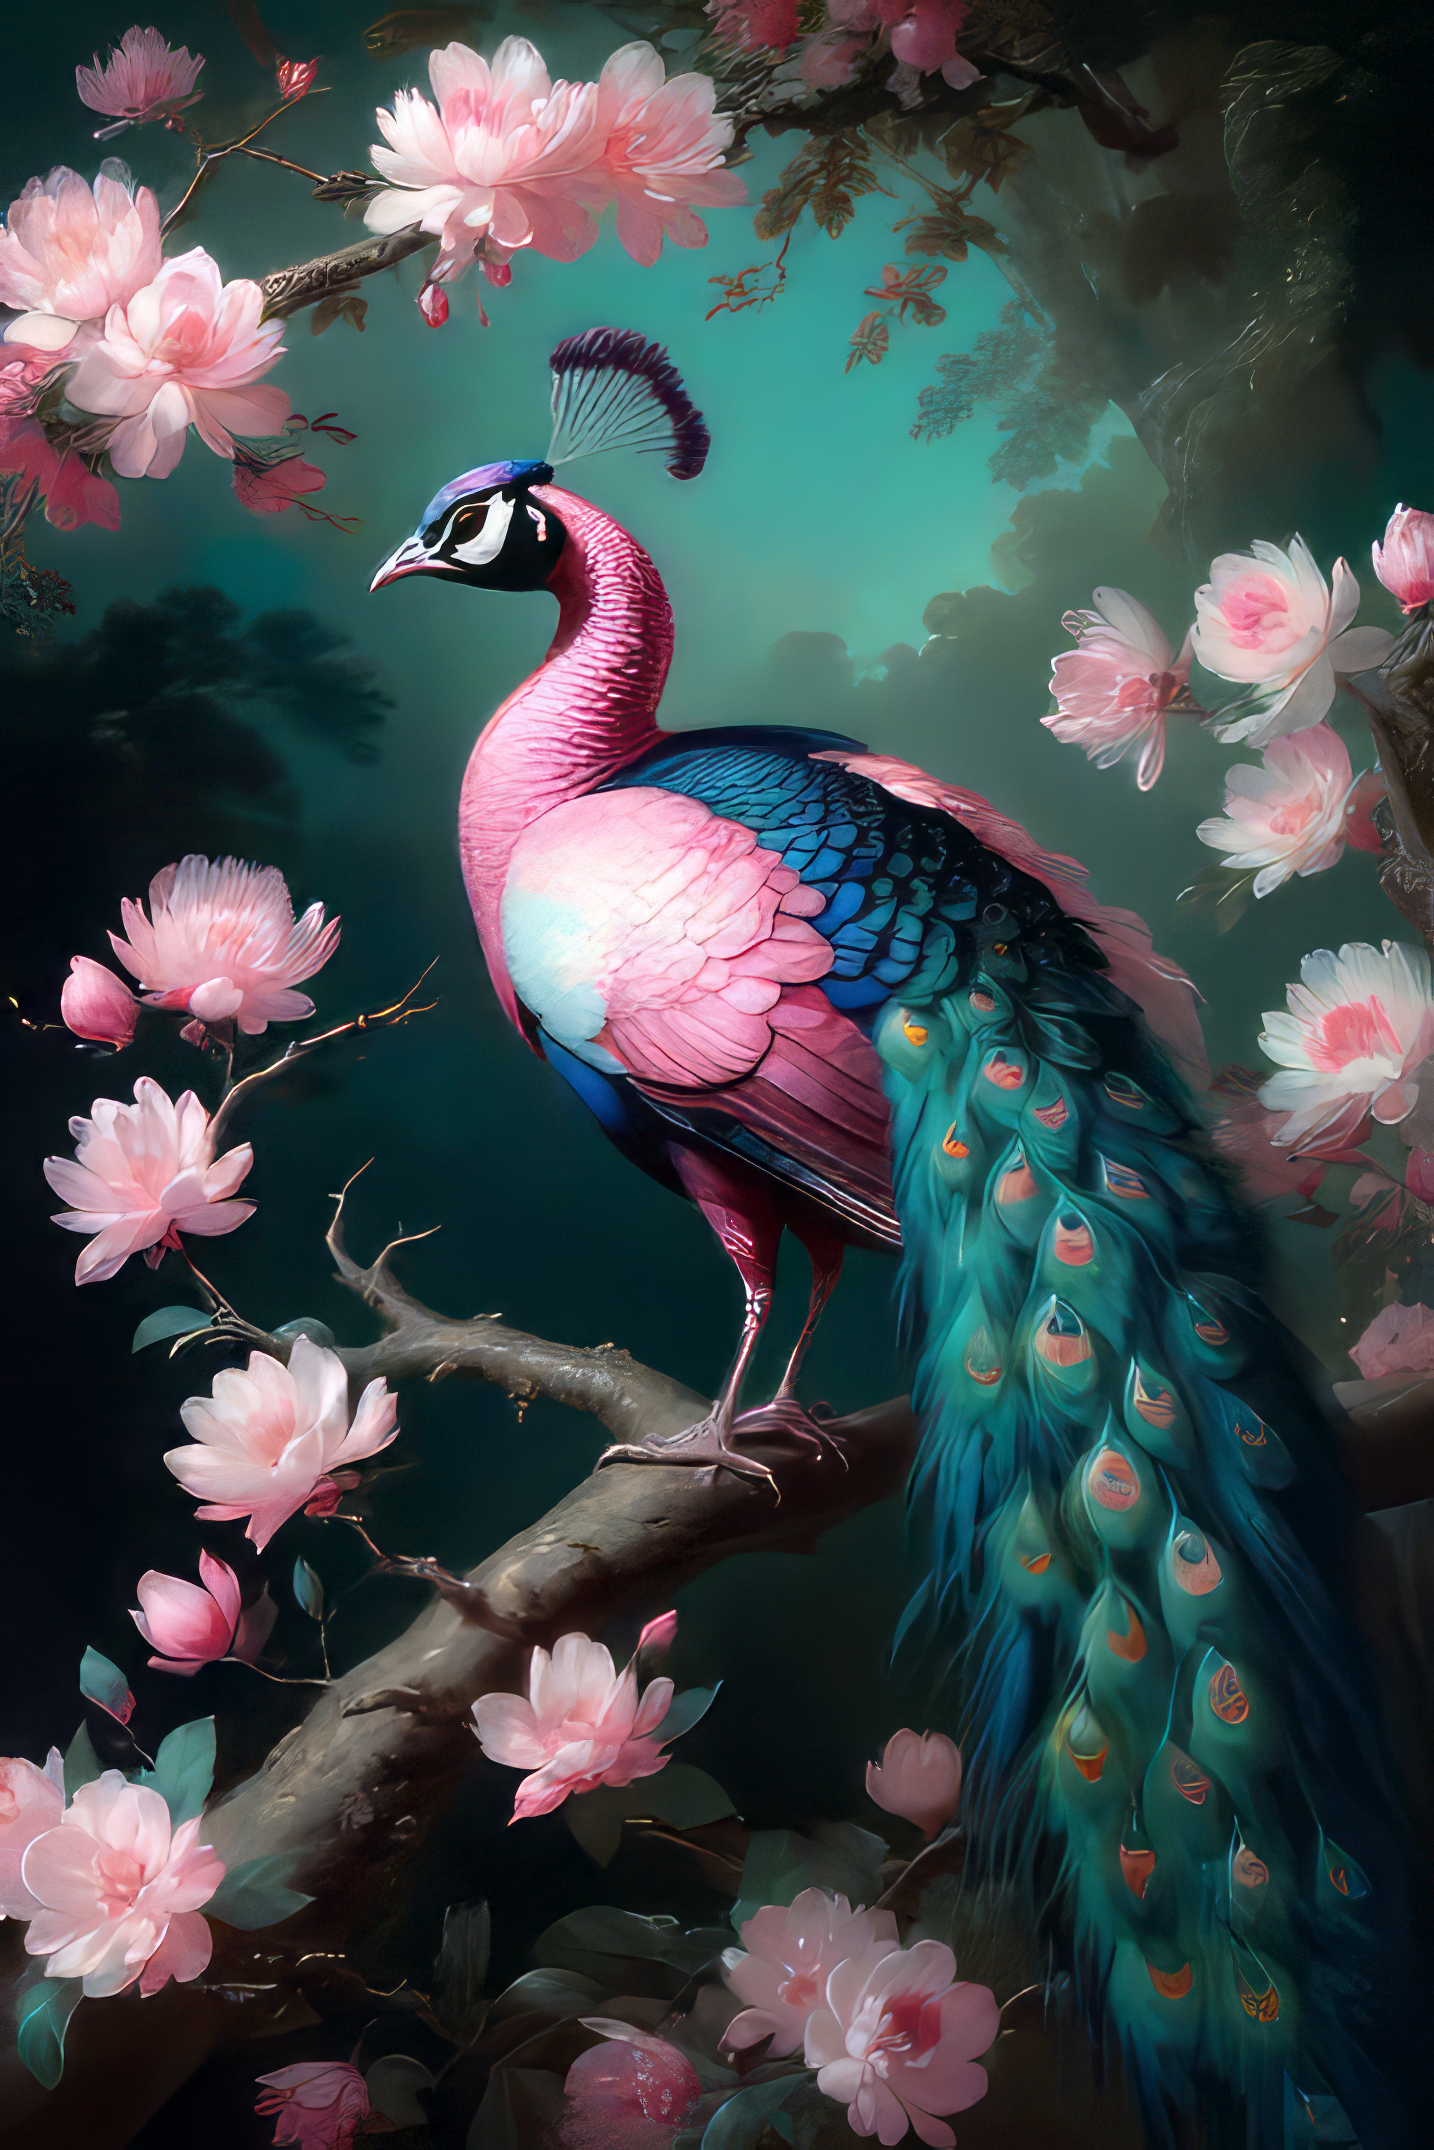 綺麗でかわいいピンクとカッコイイ青色の優雅な孔雀と花々の油絵風のリアルなフリーのイラスト